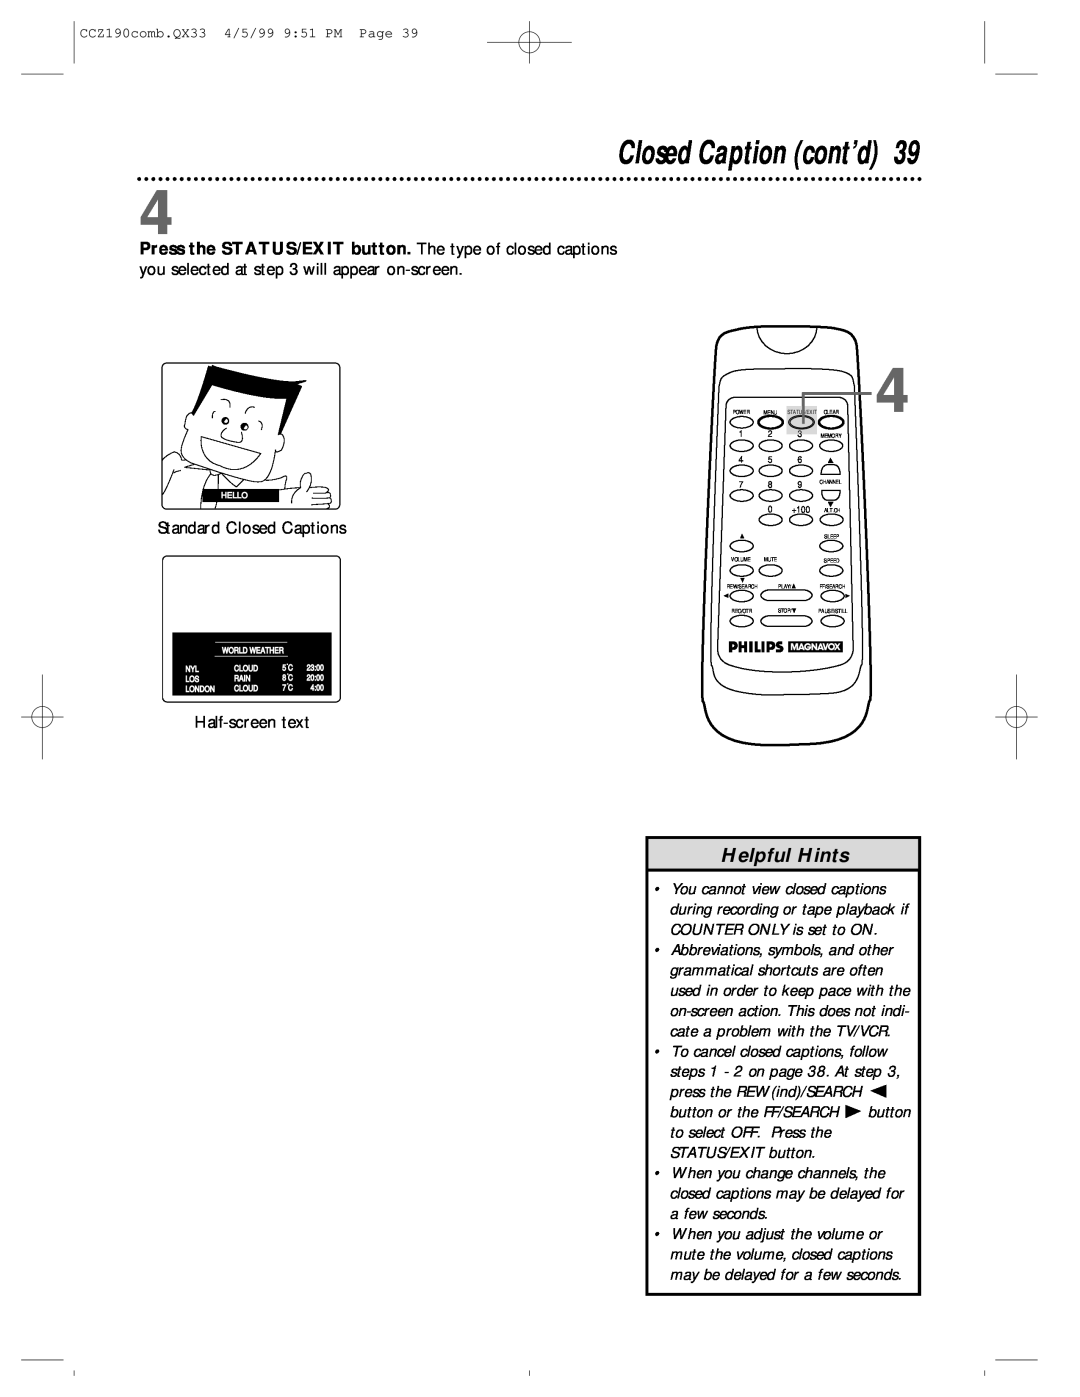 Magnavox CCZ190AT owner manual Closed Caption cont’d, Helpful Hints, Standard Closed Captions, Half-screen text 